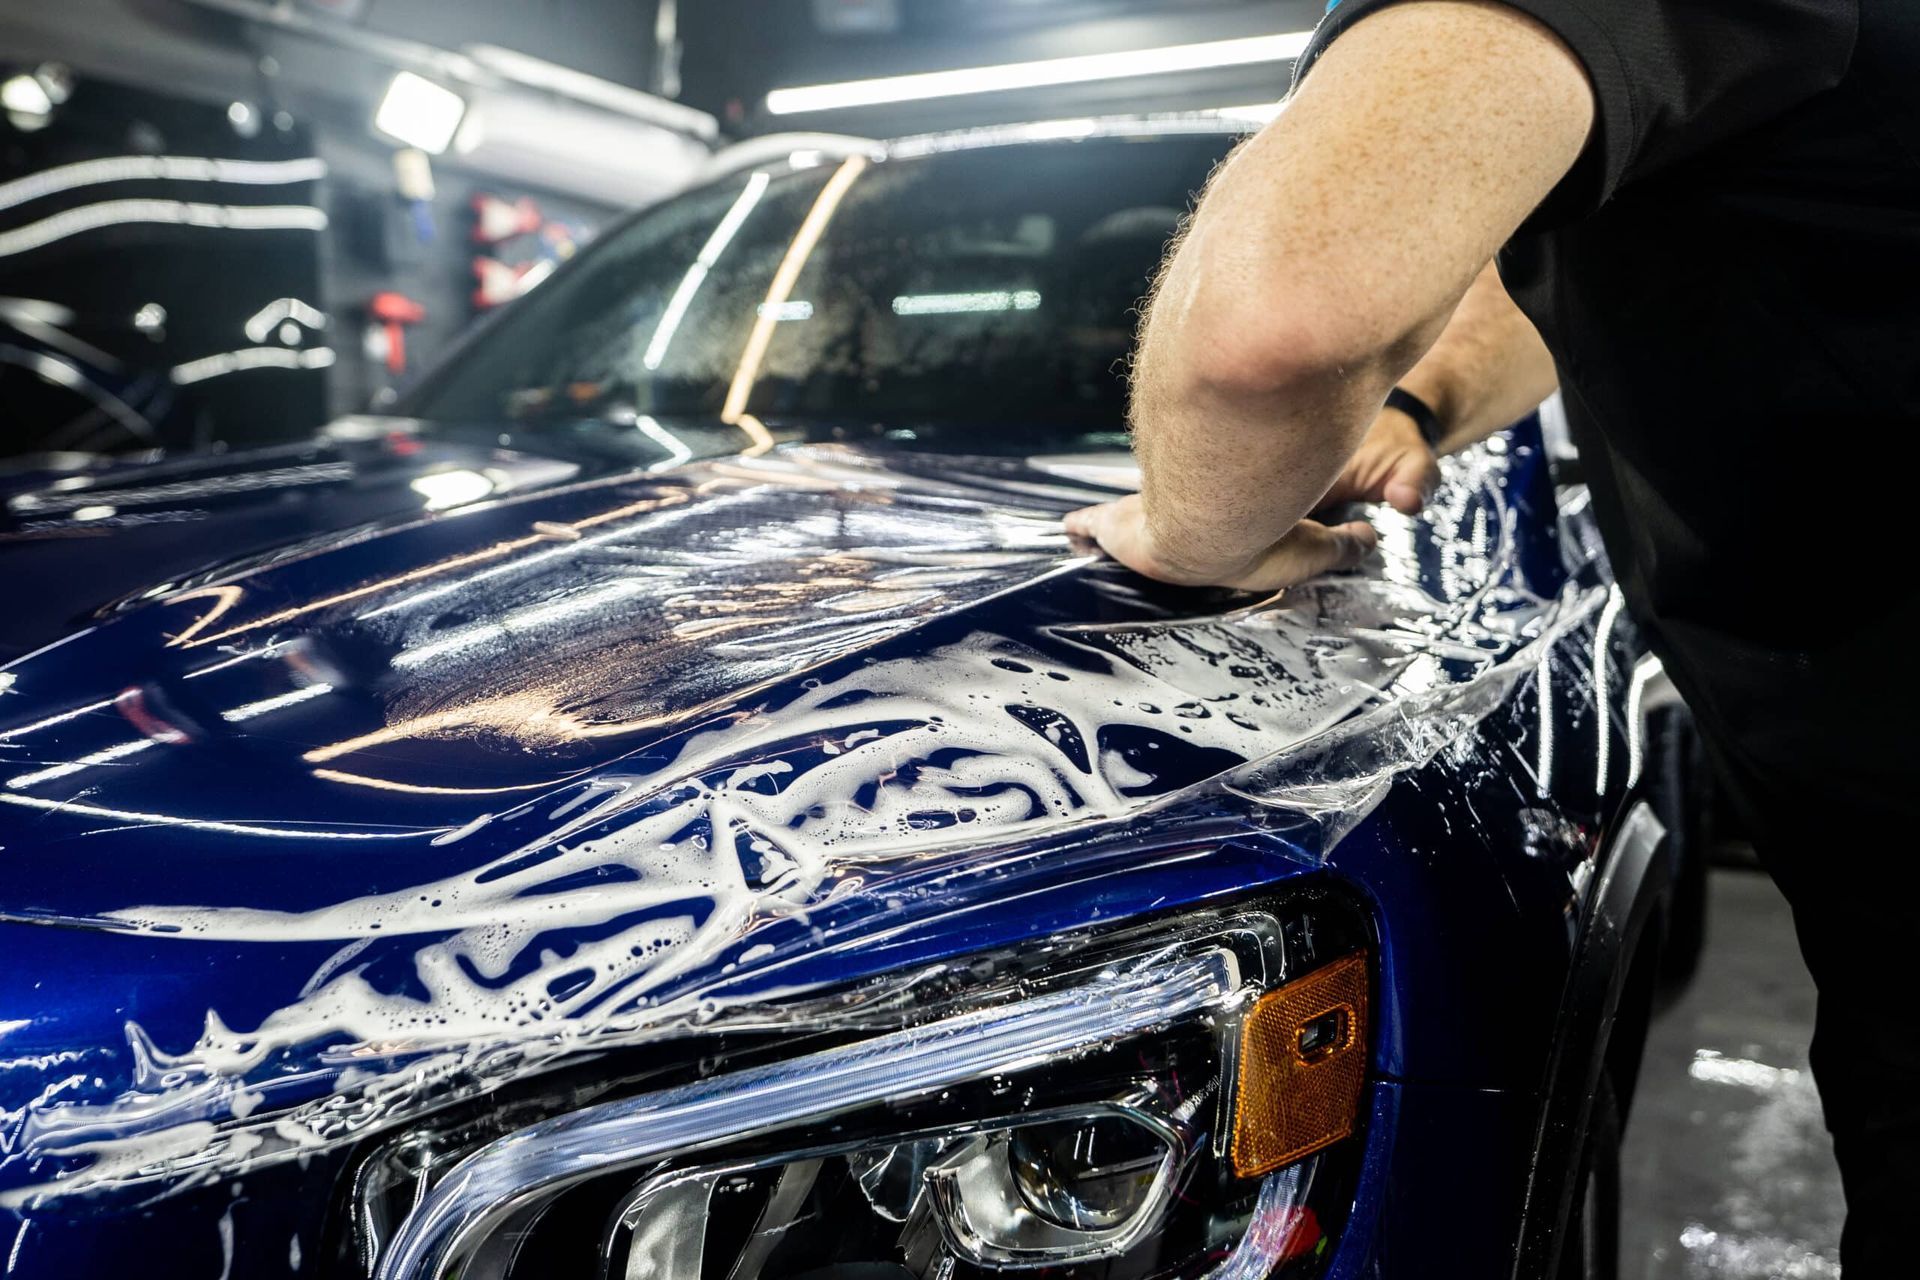 A man is washing a blue car in a car wash.